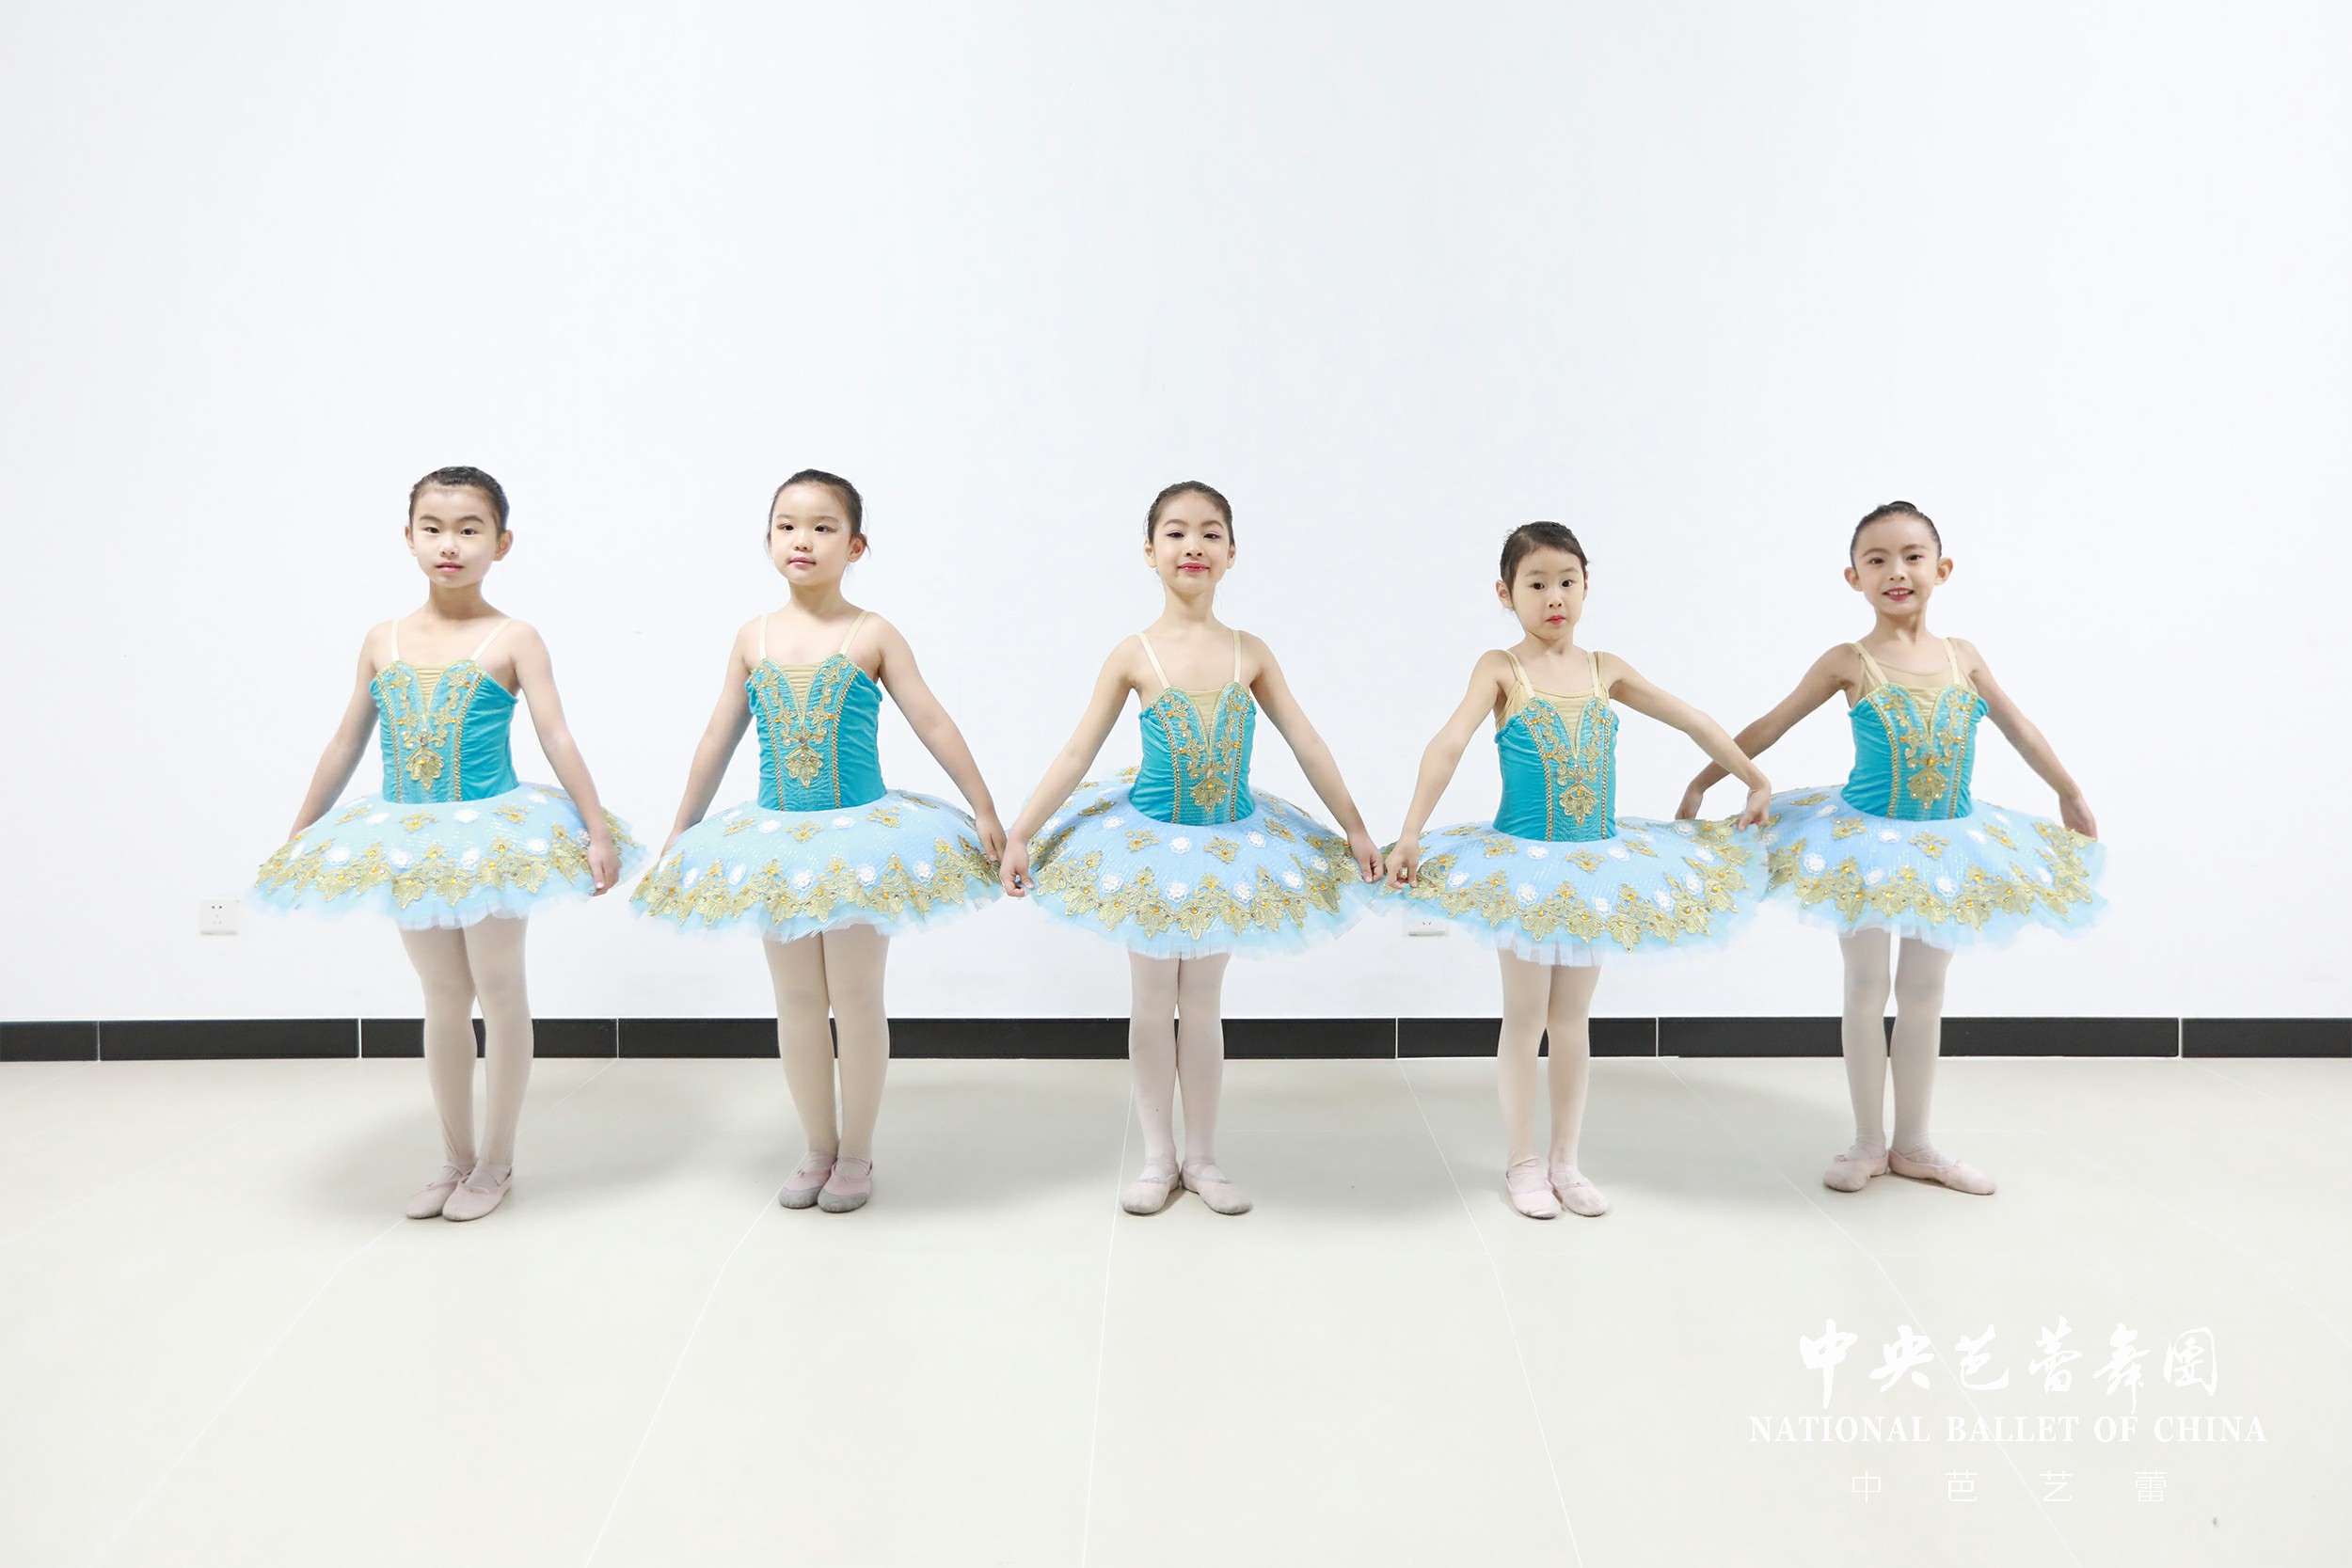 中华文明的根和魂献花中芭交响芭蕾“世纪”致敬